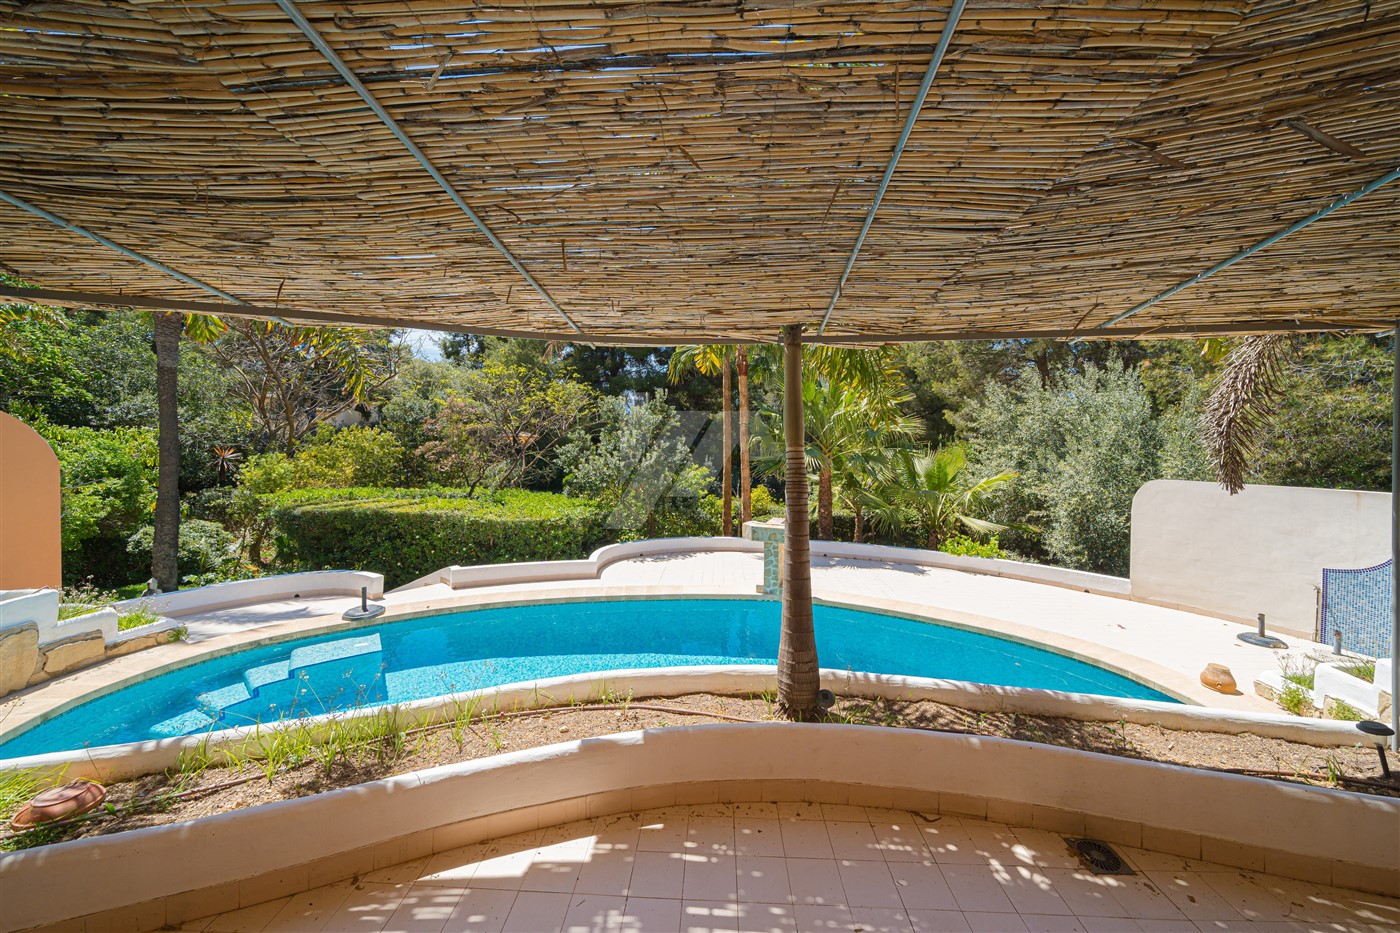 Villa im mediterranen Stil zum Verkauf in Benissa, Costa Blanca.